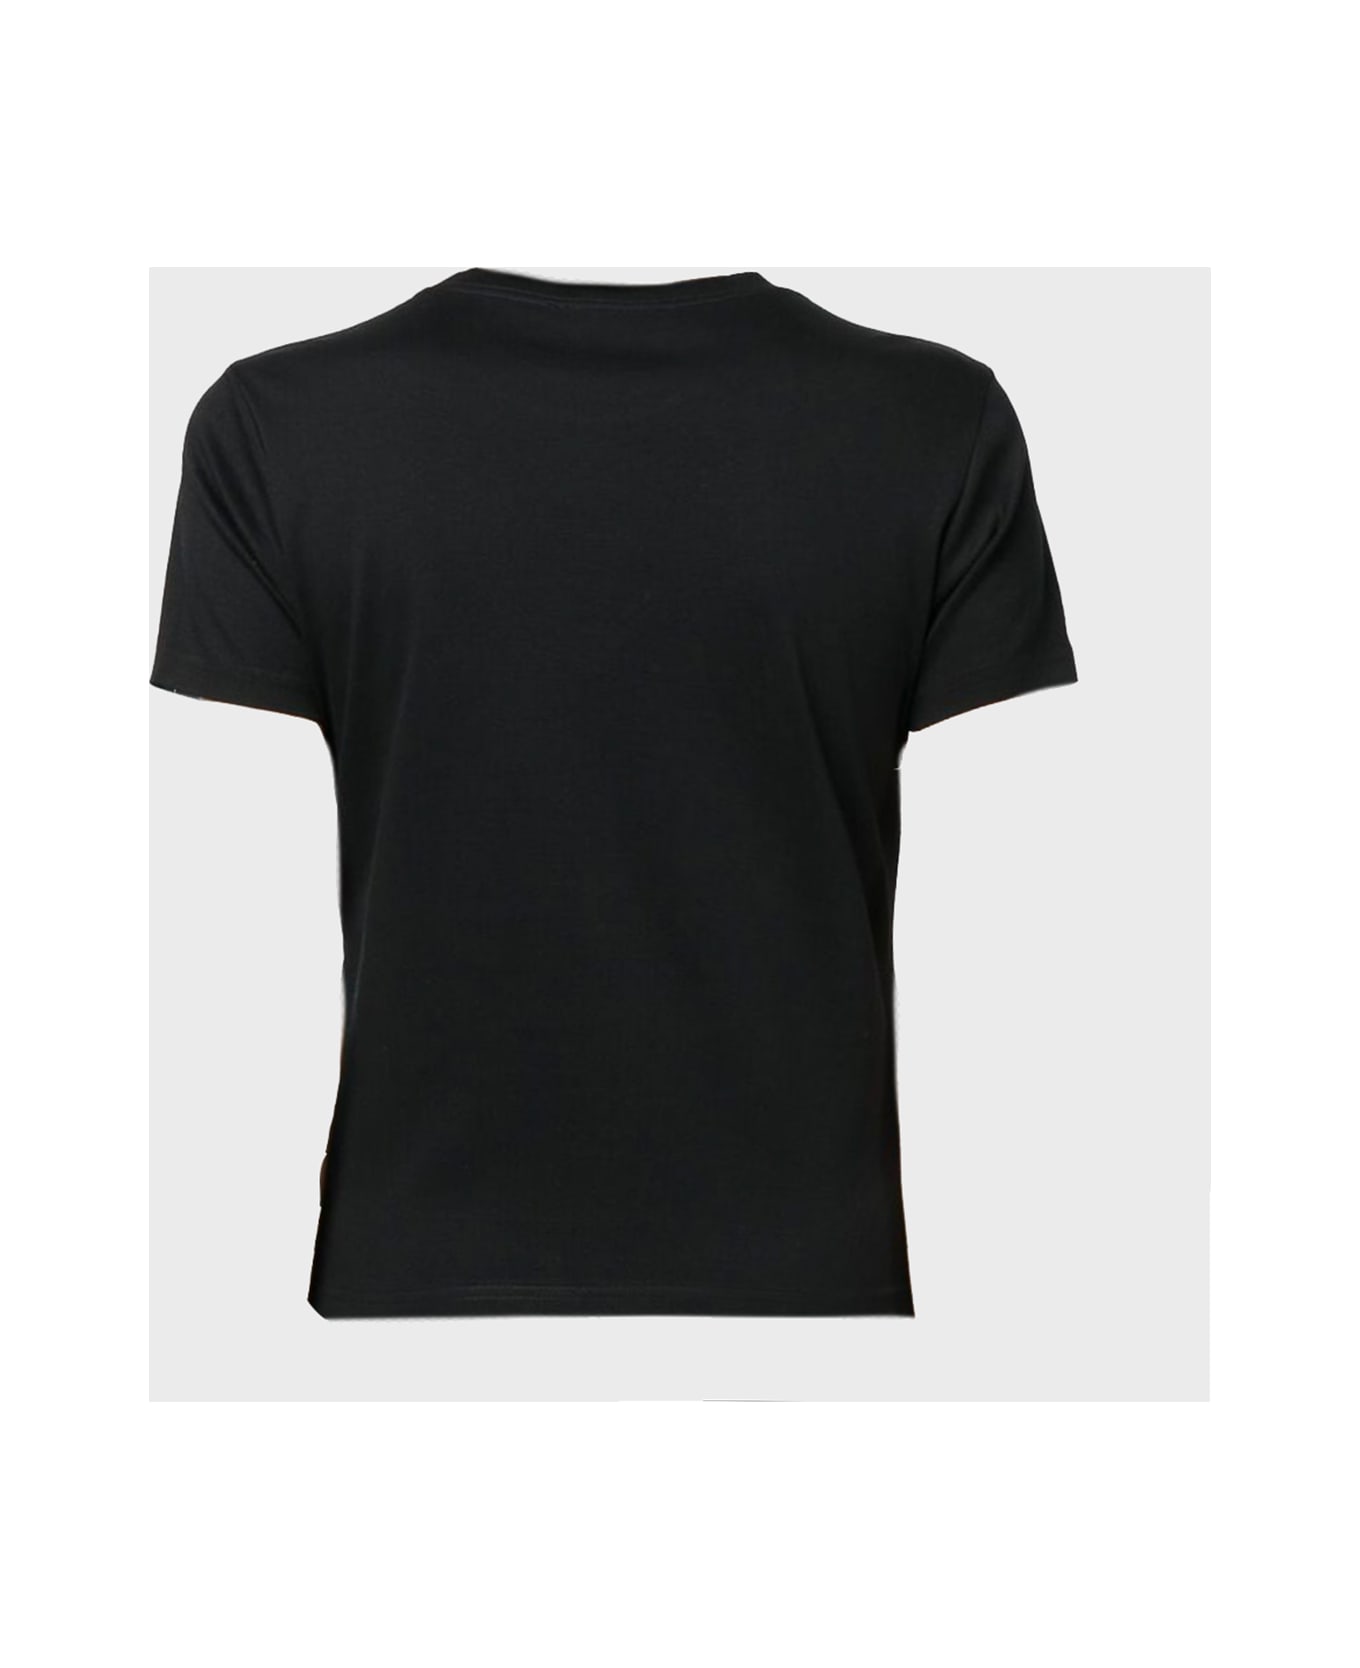 Lanvin Black Cotton T-shirt - Black Tシャツ